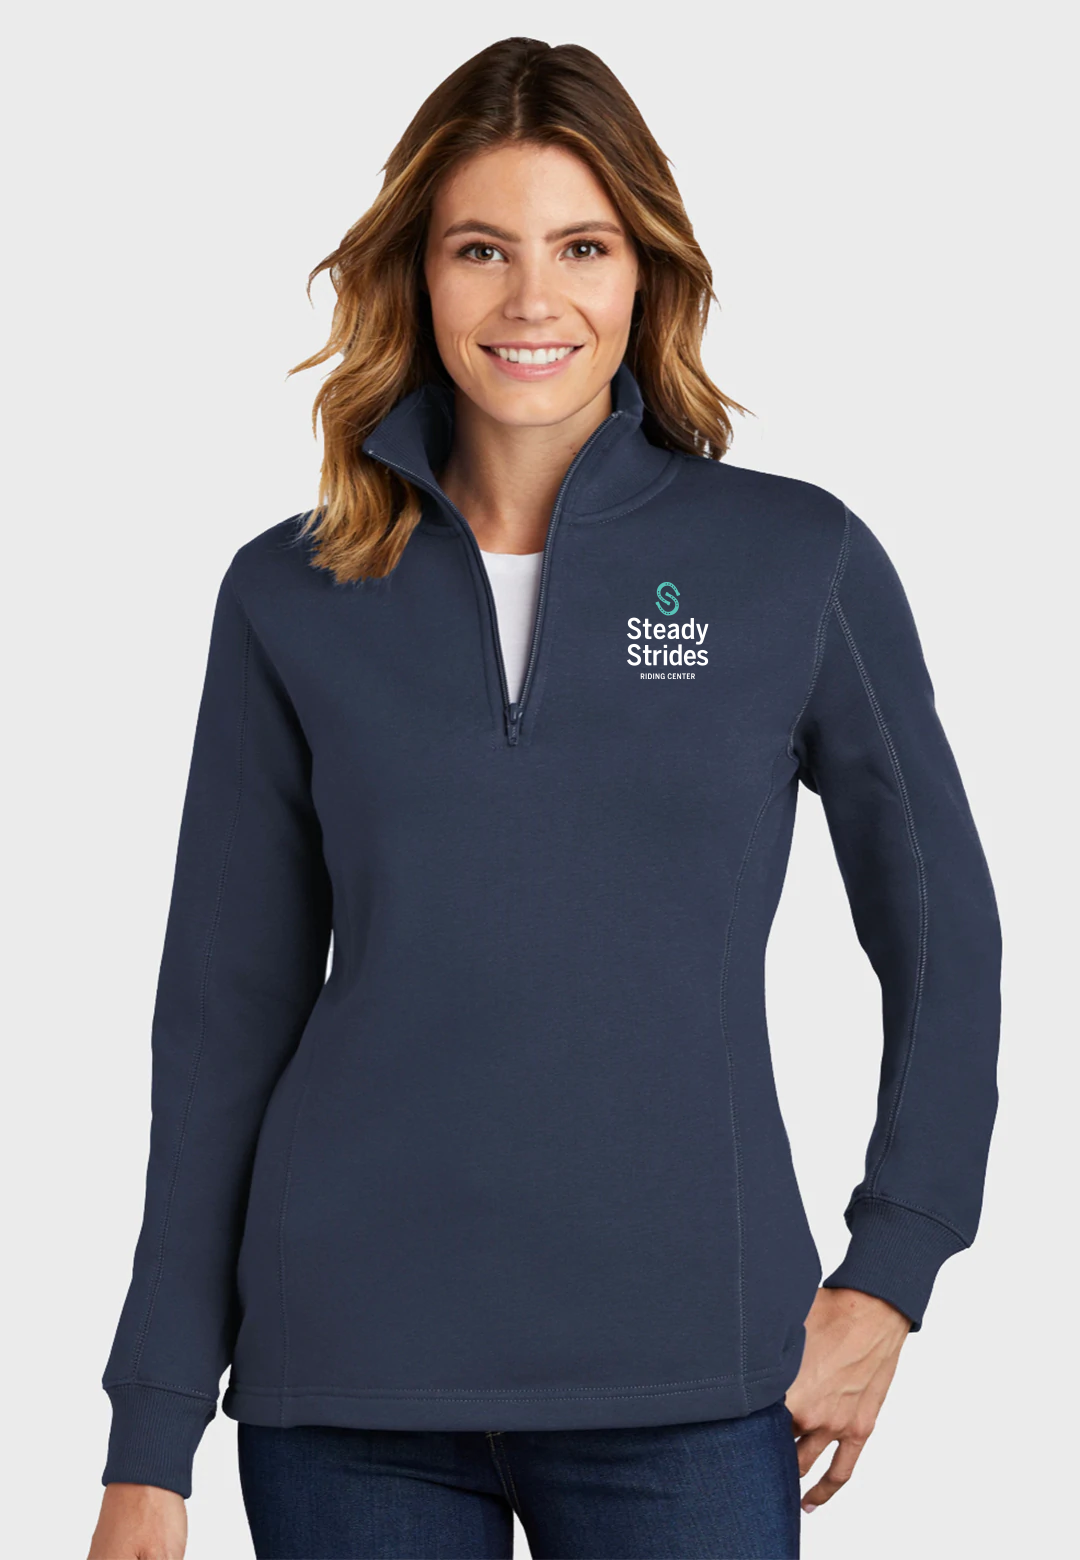 Steady Strides Riding Center Sport-Tek® Ladies 1/4-Zip Sweatshirt - Navy